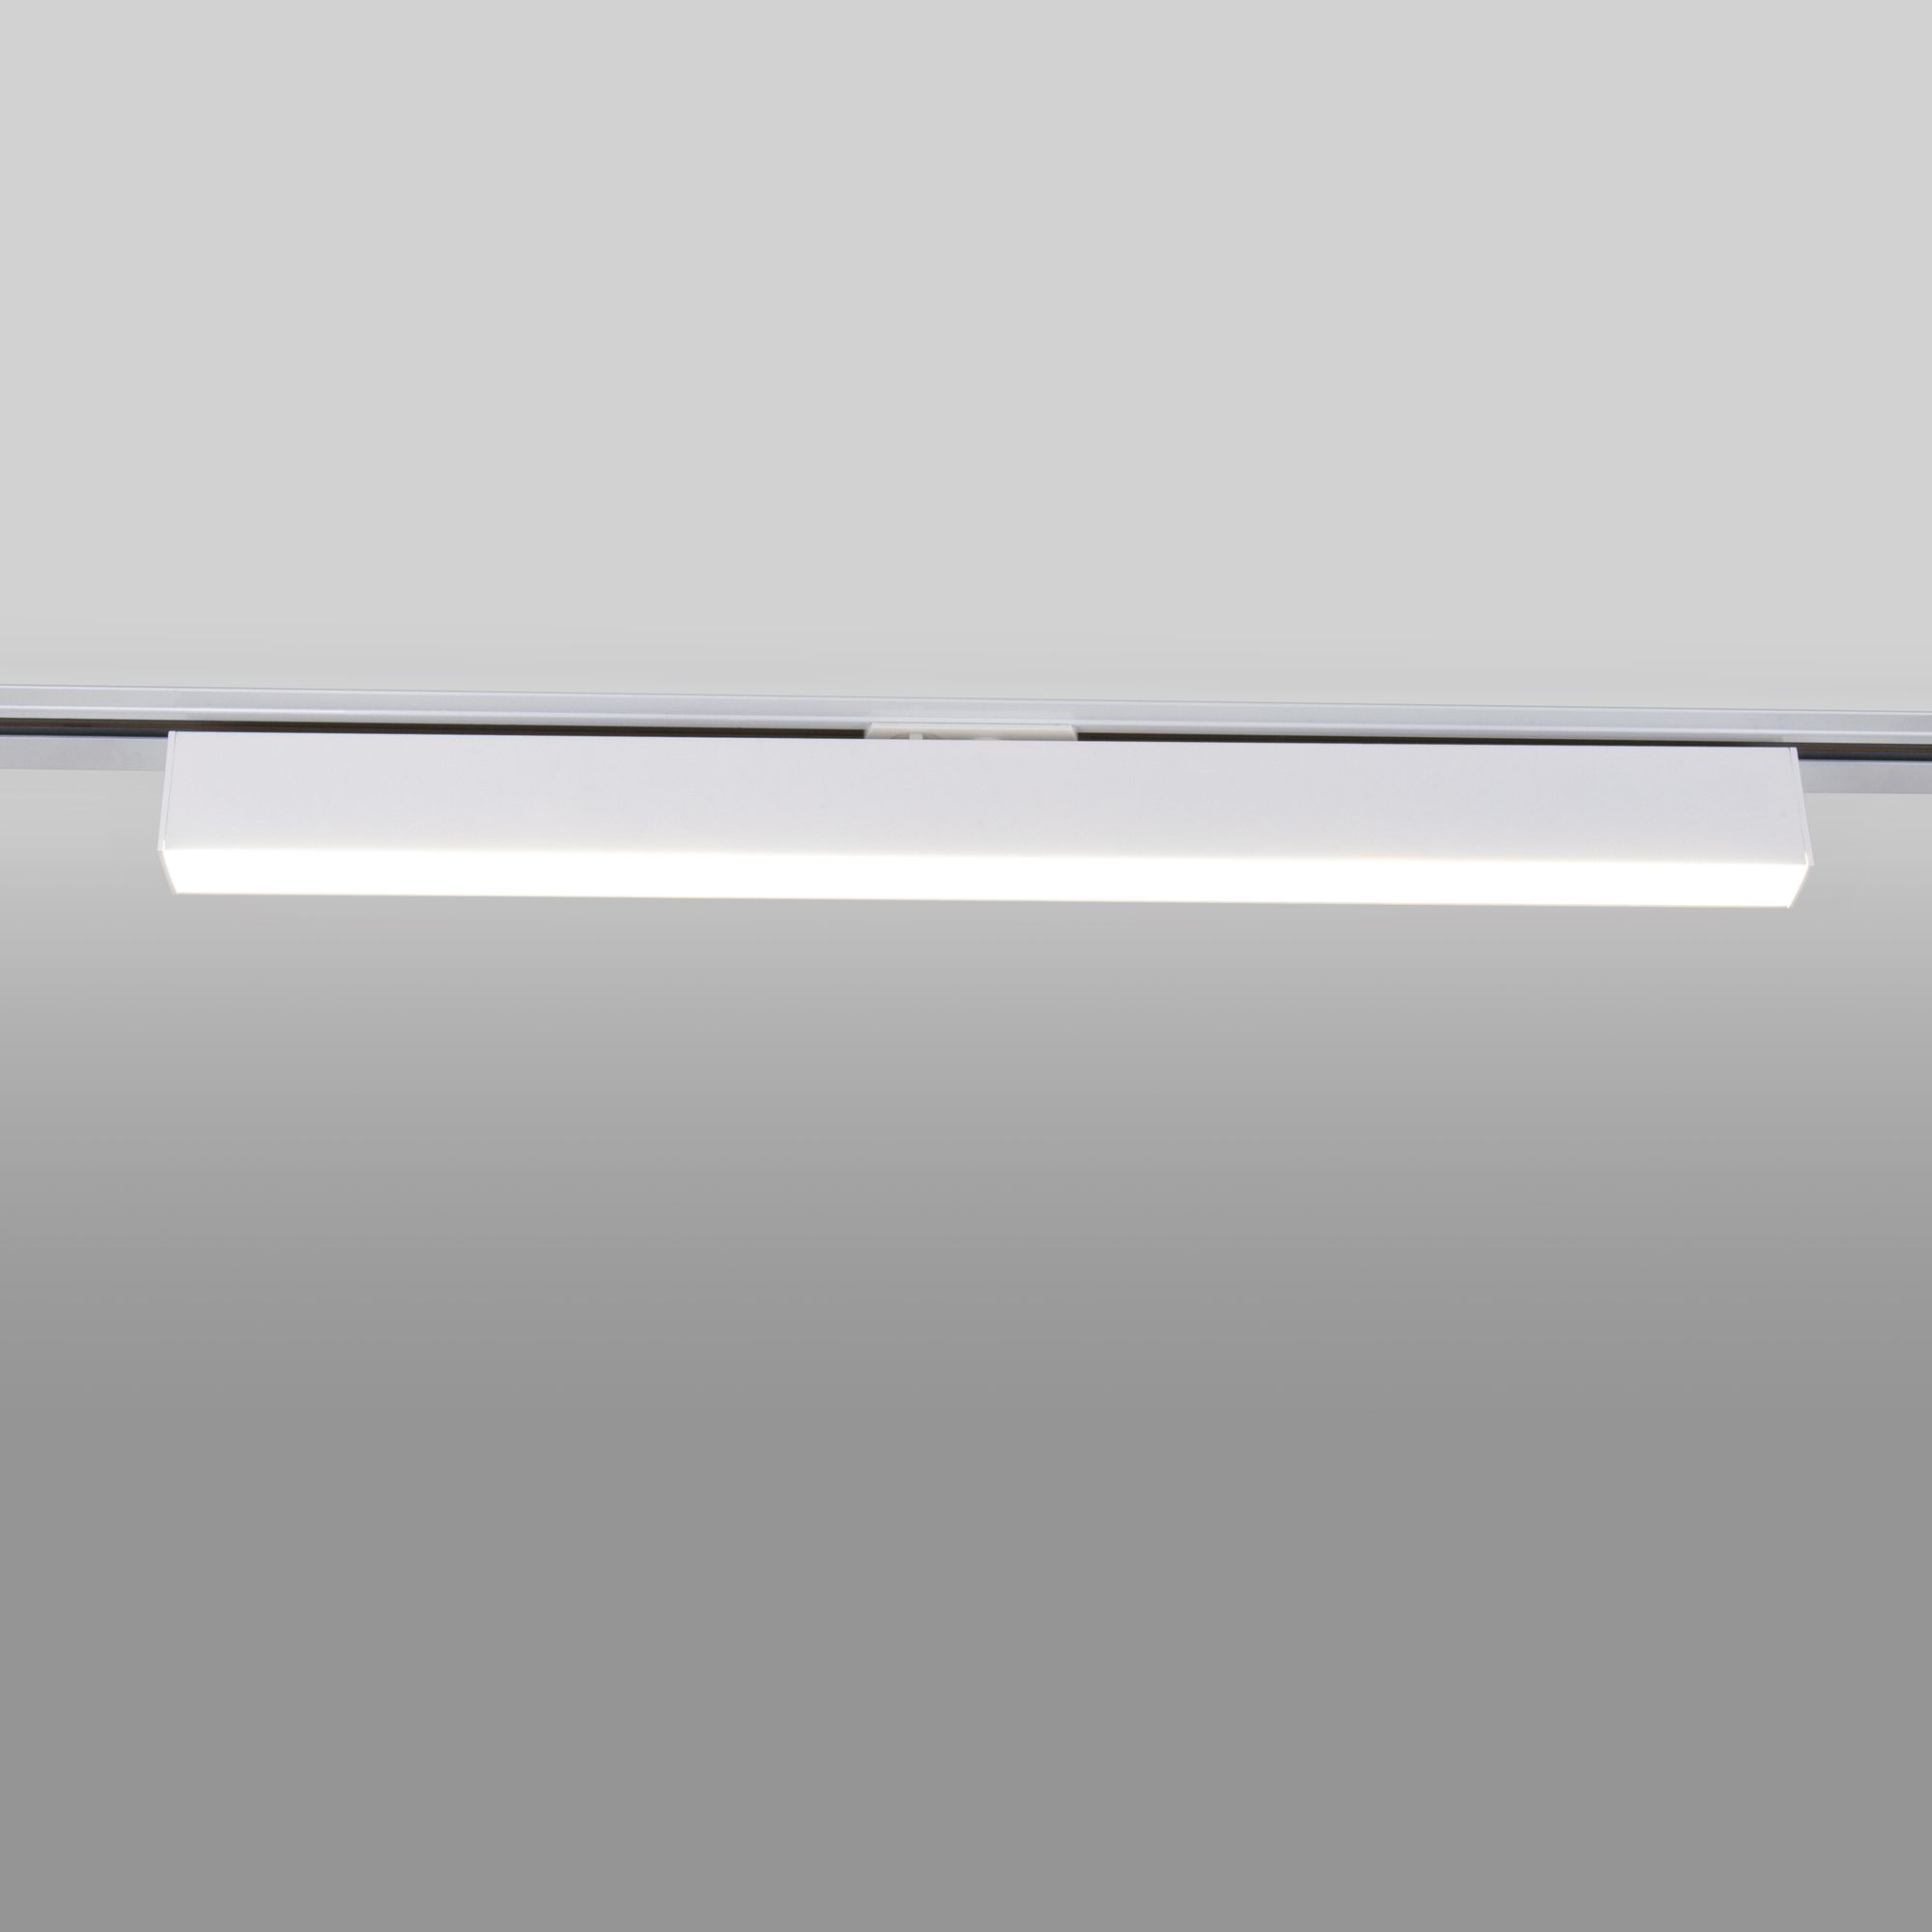 Трековый светодиодный светильник для однофазного шинопровода X-Line 20W 4200K белый матовый Elektrostandard X-Line X-Line белый матовый 20W 4200K (LTB54) однофазный. Фото 3